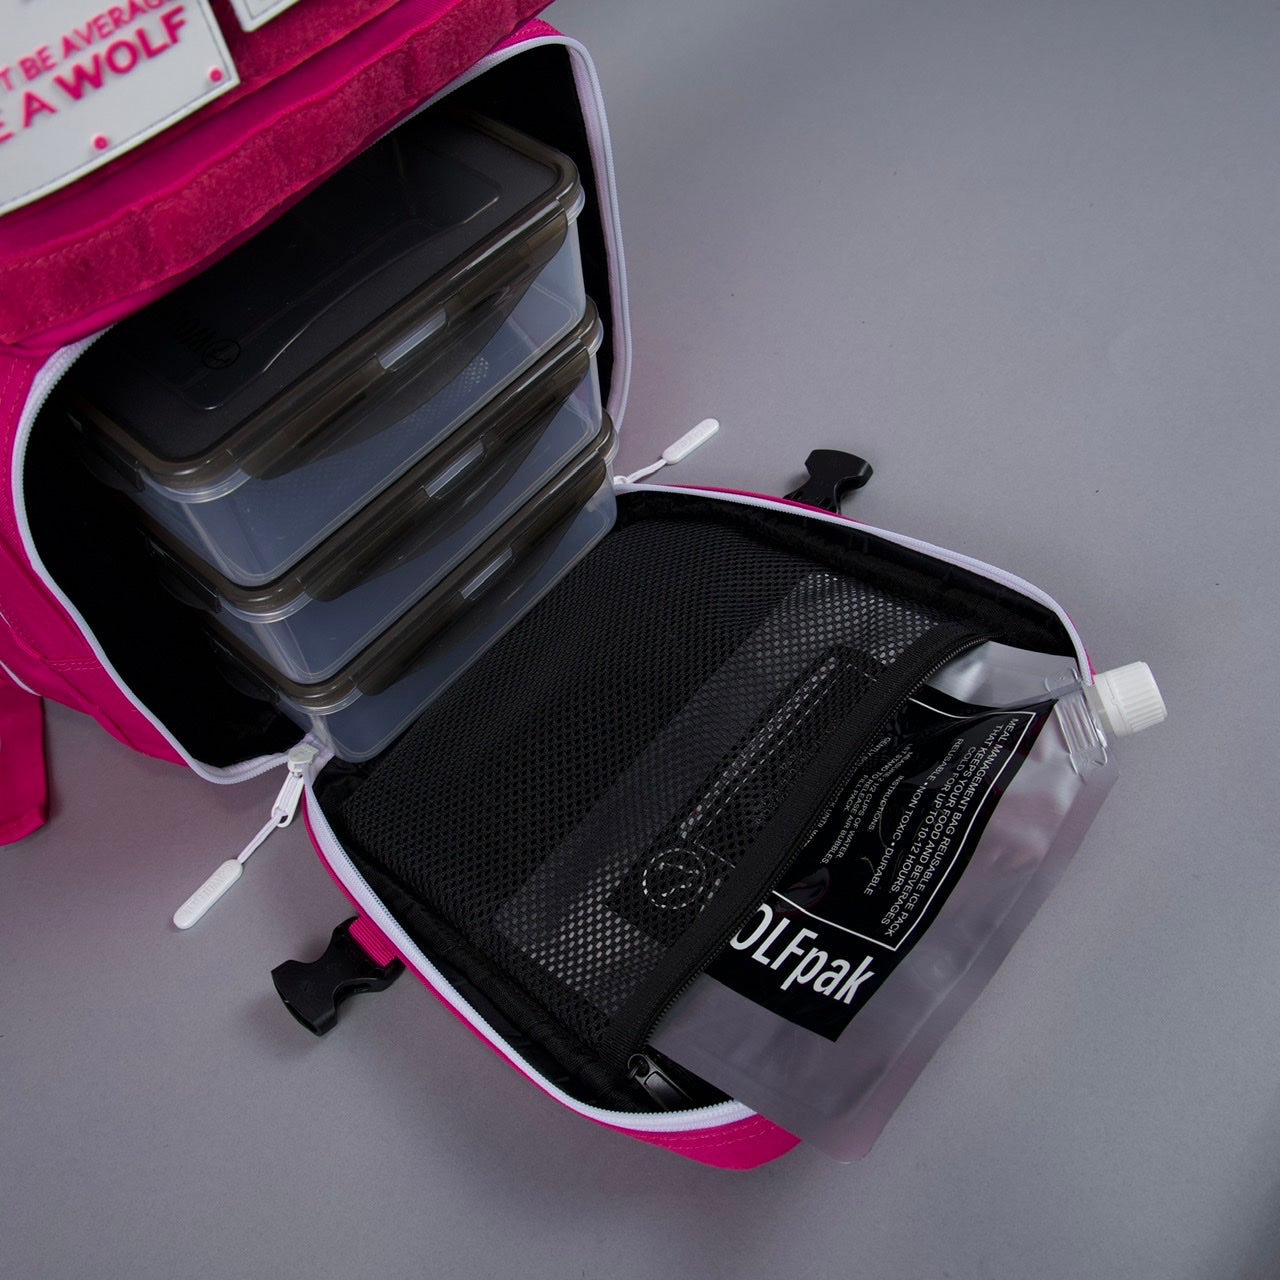 45L Pink Goddess Meal Prep Management Backpack